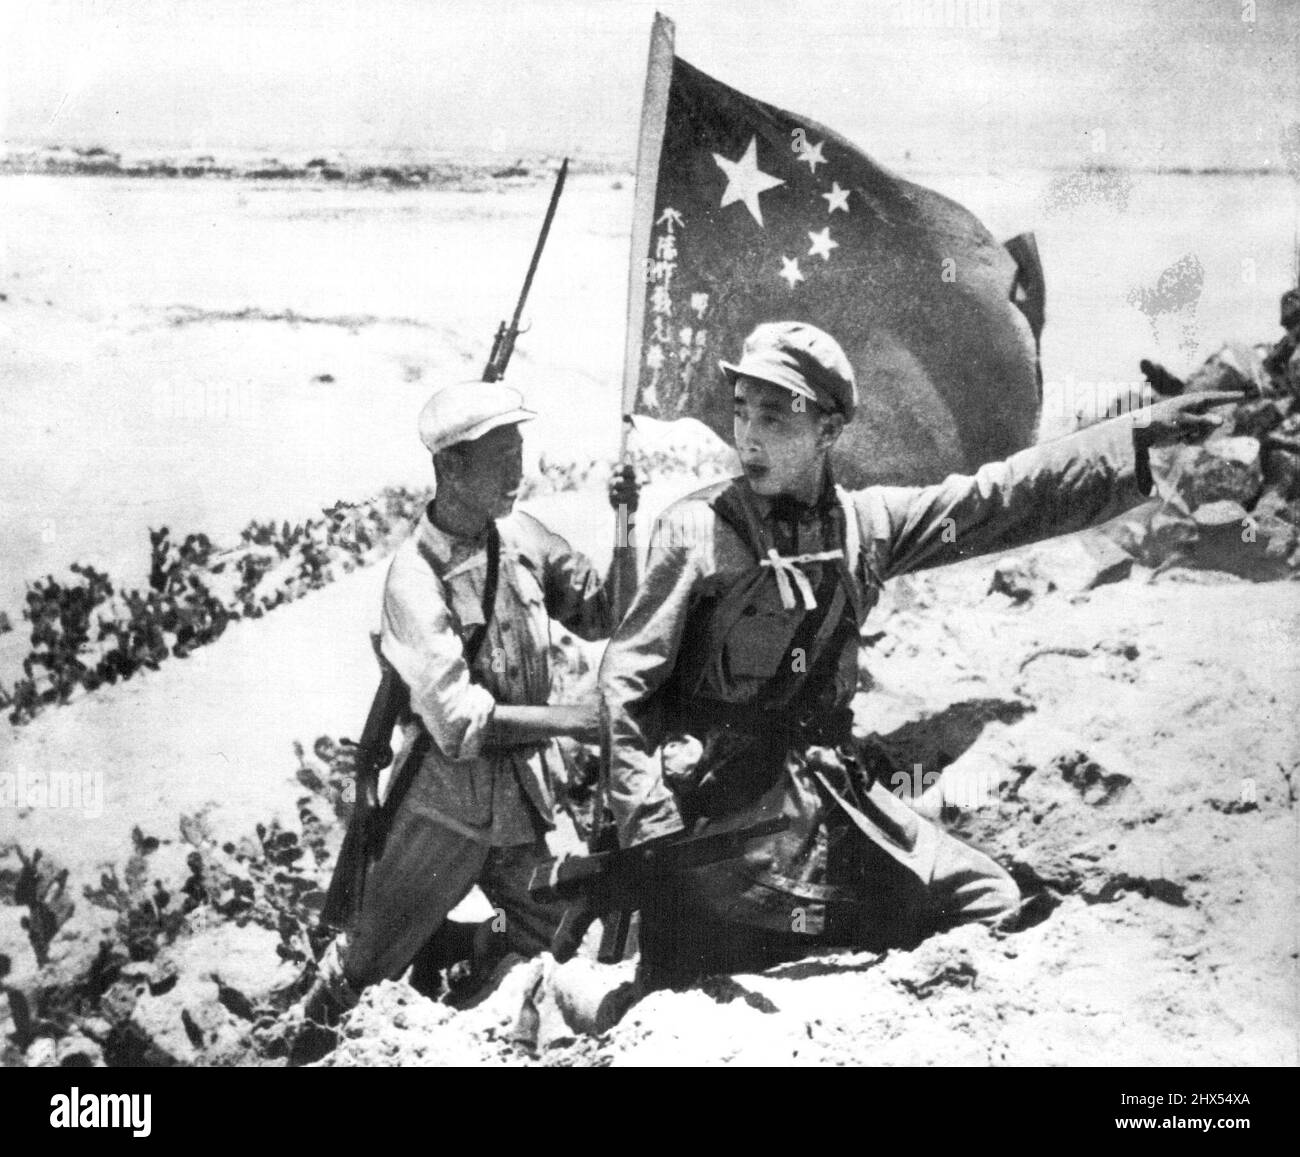 Rote Truppen Auf Der Insel Hainan -- Dieses Bild der Invasion der Insel Hainan vor der Südküste Chinas Mitte April wurde von einem Fotografen aufgenommen, der mit den chinesischen Reds an Land ging und beschrieben wird, als er rote Soldaten zeigt, die an einem Strand auf der Nordseite der Insel aufmarschierten. Eine trägt die chinesische kommunistische Flagge. Bild, das heute per Flugzeug nach New York kam, wurde Wochen nach der Invasion in Hongkong verfügbar. 7. Juli 1950. (Foto von AP Wirephoto). Stockfoto